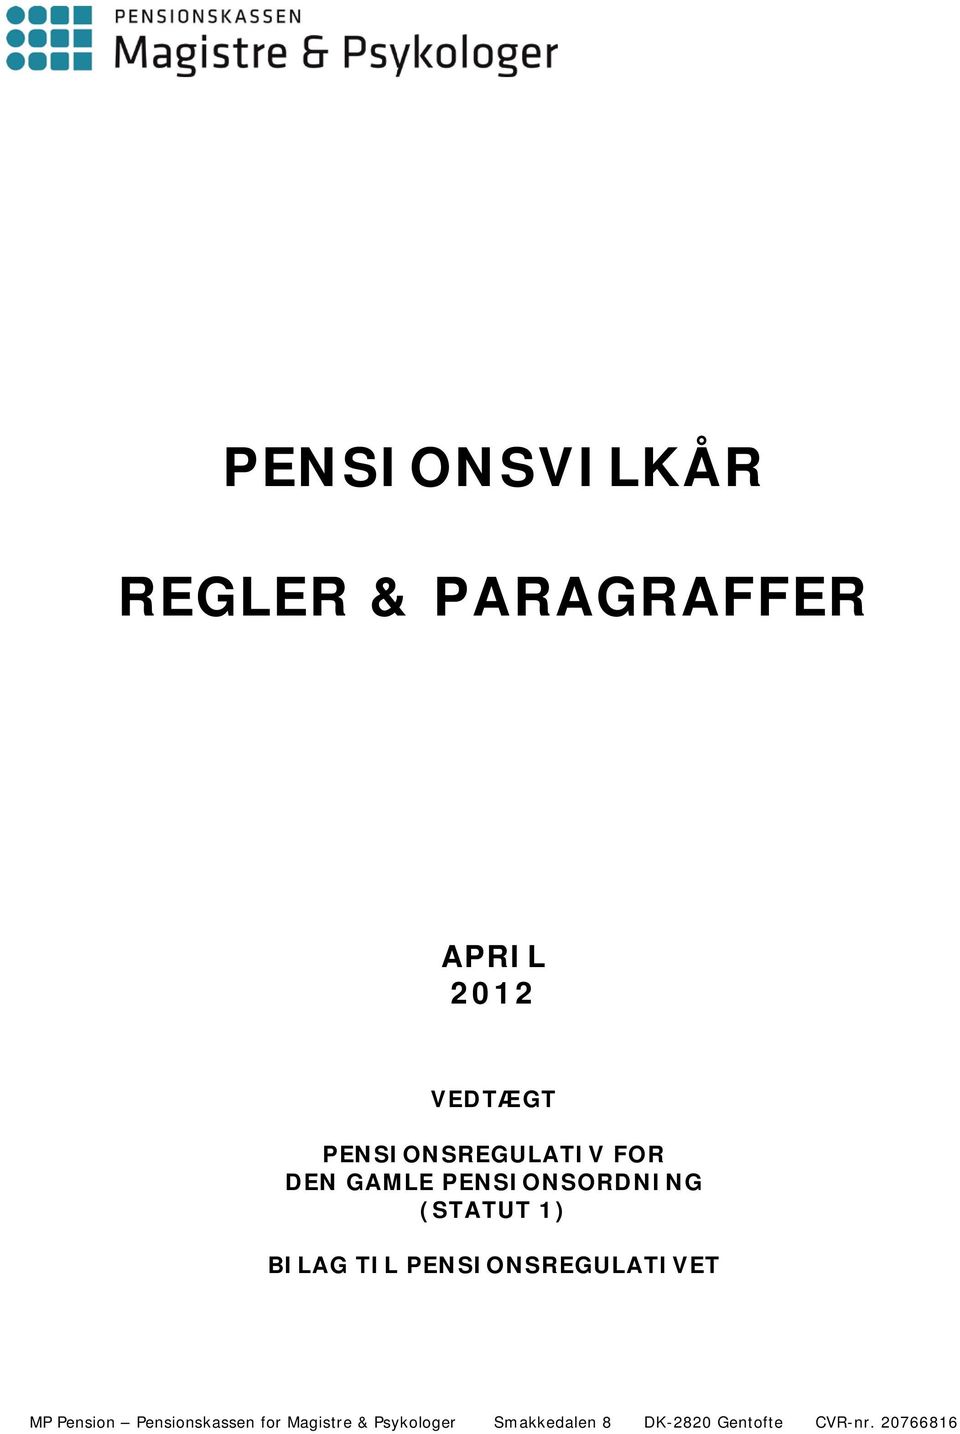 BILAG TIL PENSIONSREGULATIVET MP Pension Pensionskassen for